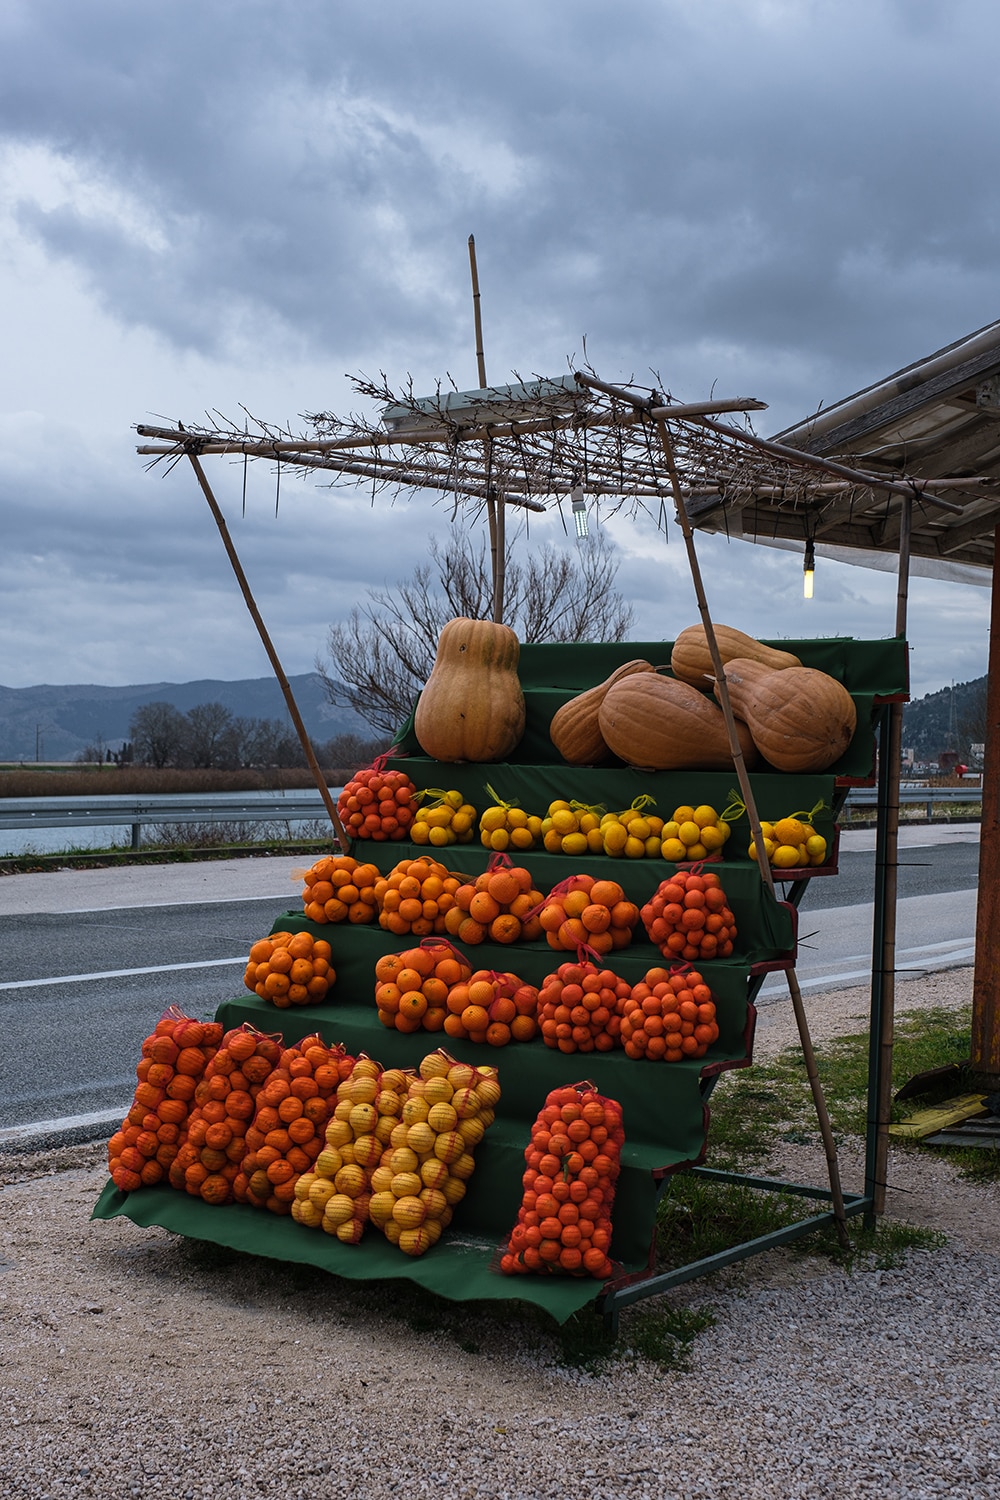 Vendeur de légumes au bord de la route en Croatie